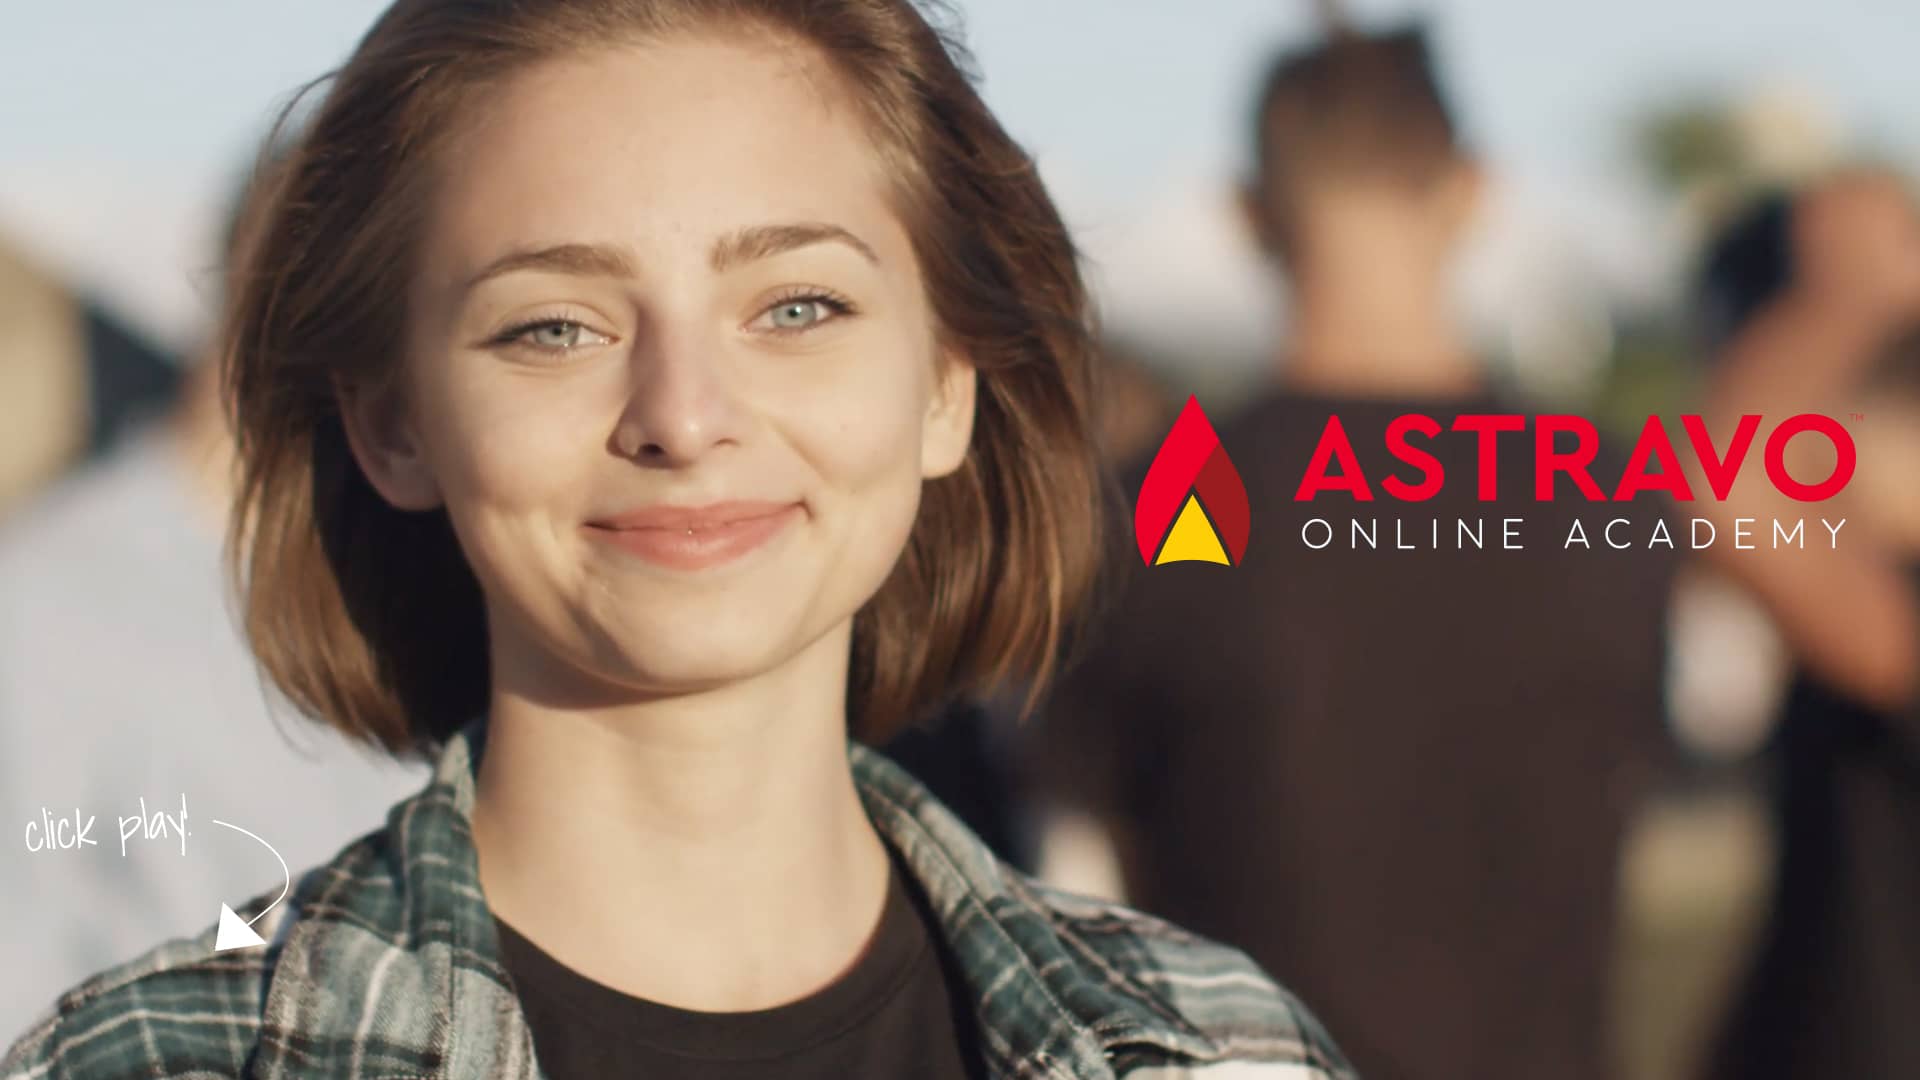 Astravo Online Academy Online High School on Vimeo